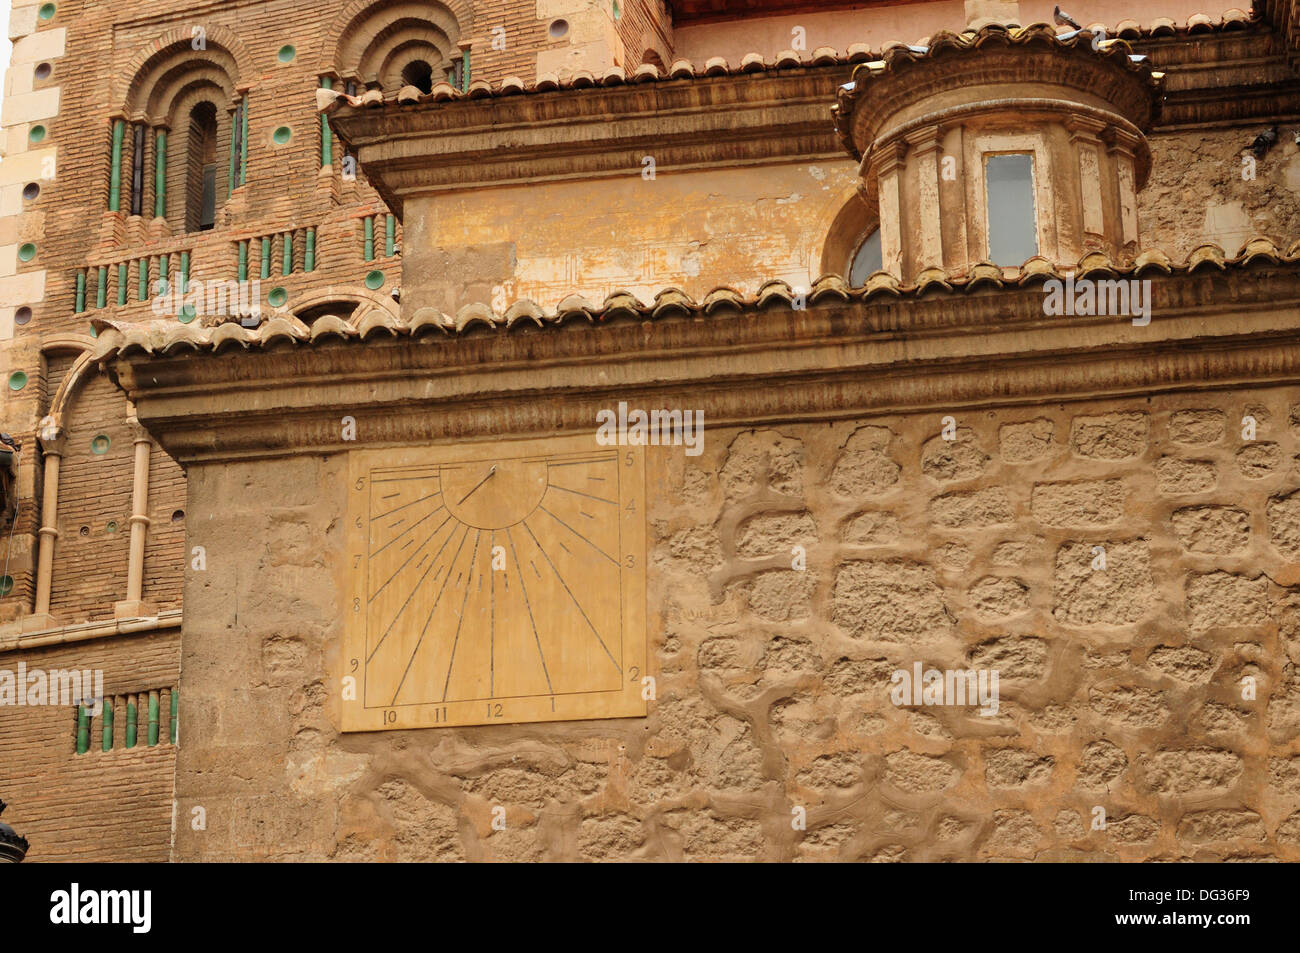 La facciata della cattedrale con una meridiana, Teruel, capitale dell'arte Mudéjar in Spagna. Foto Stock